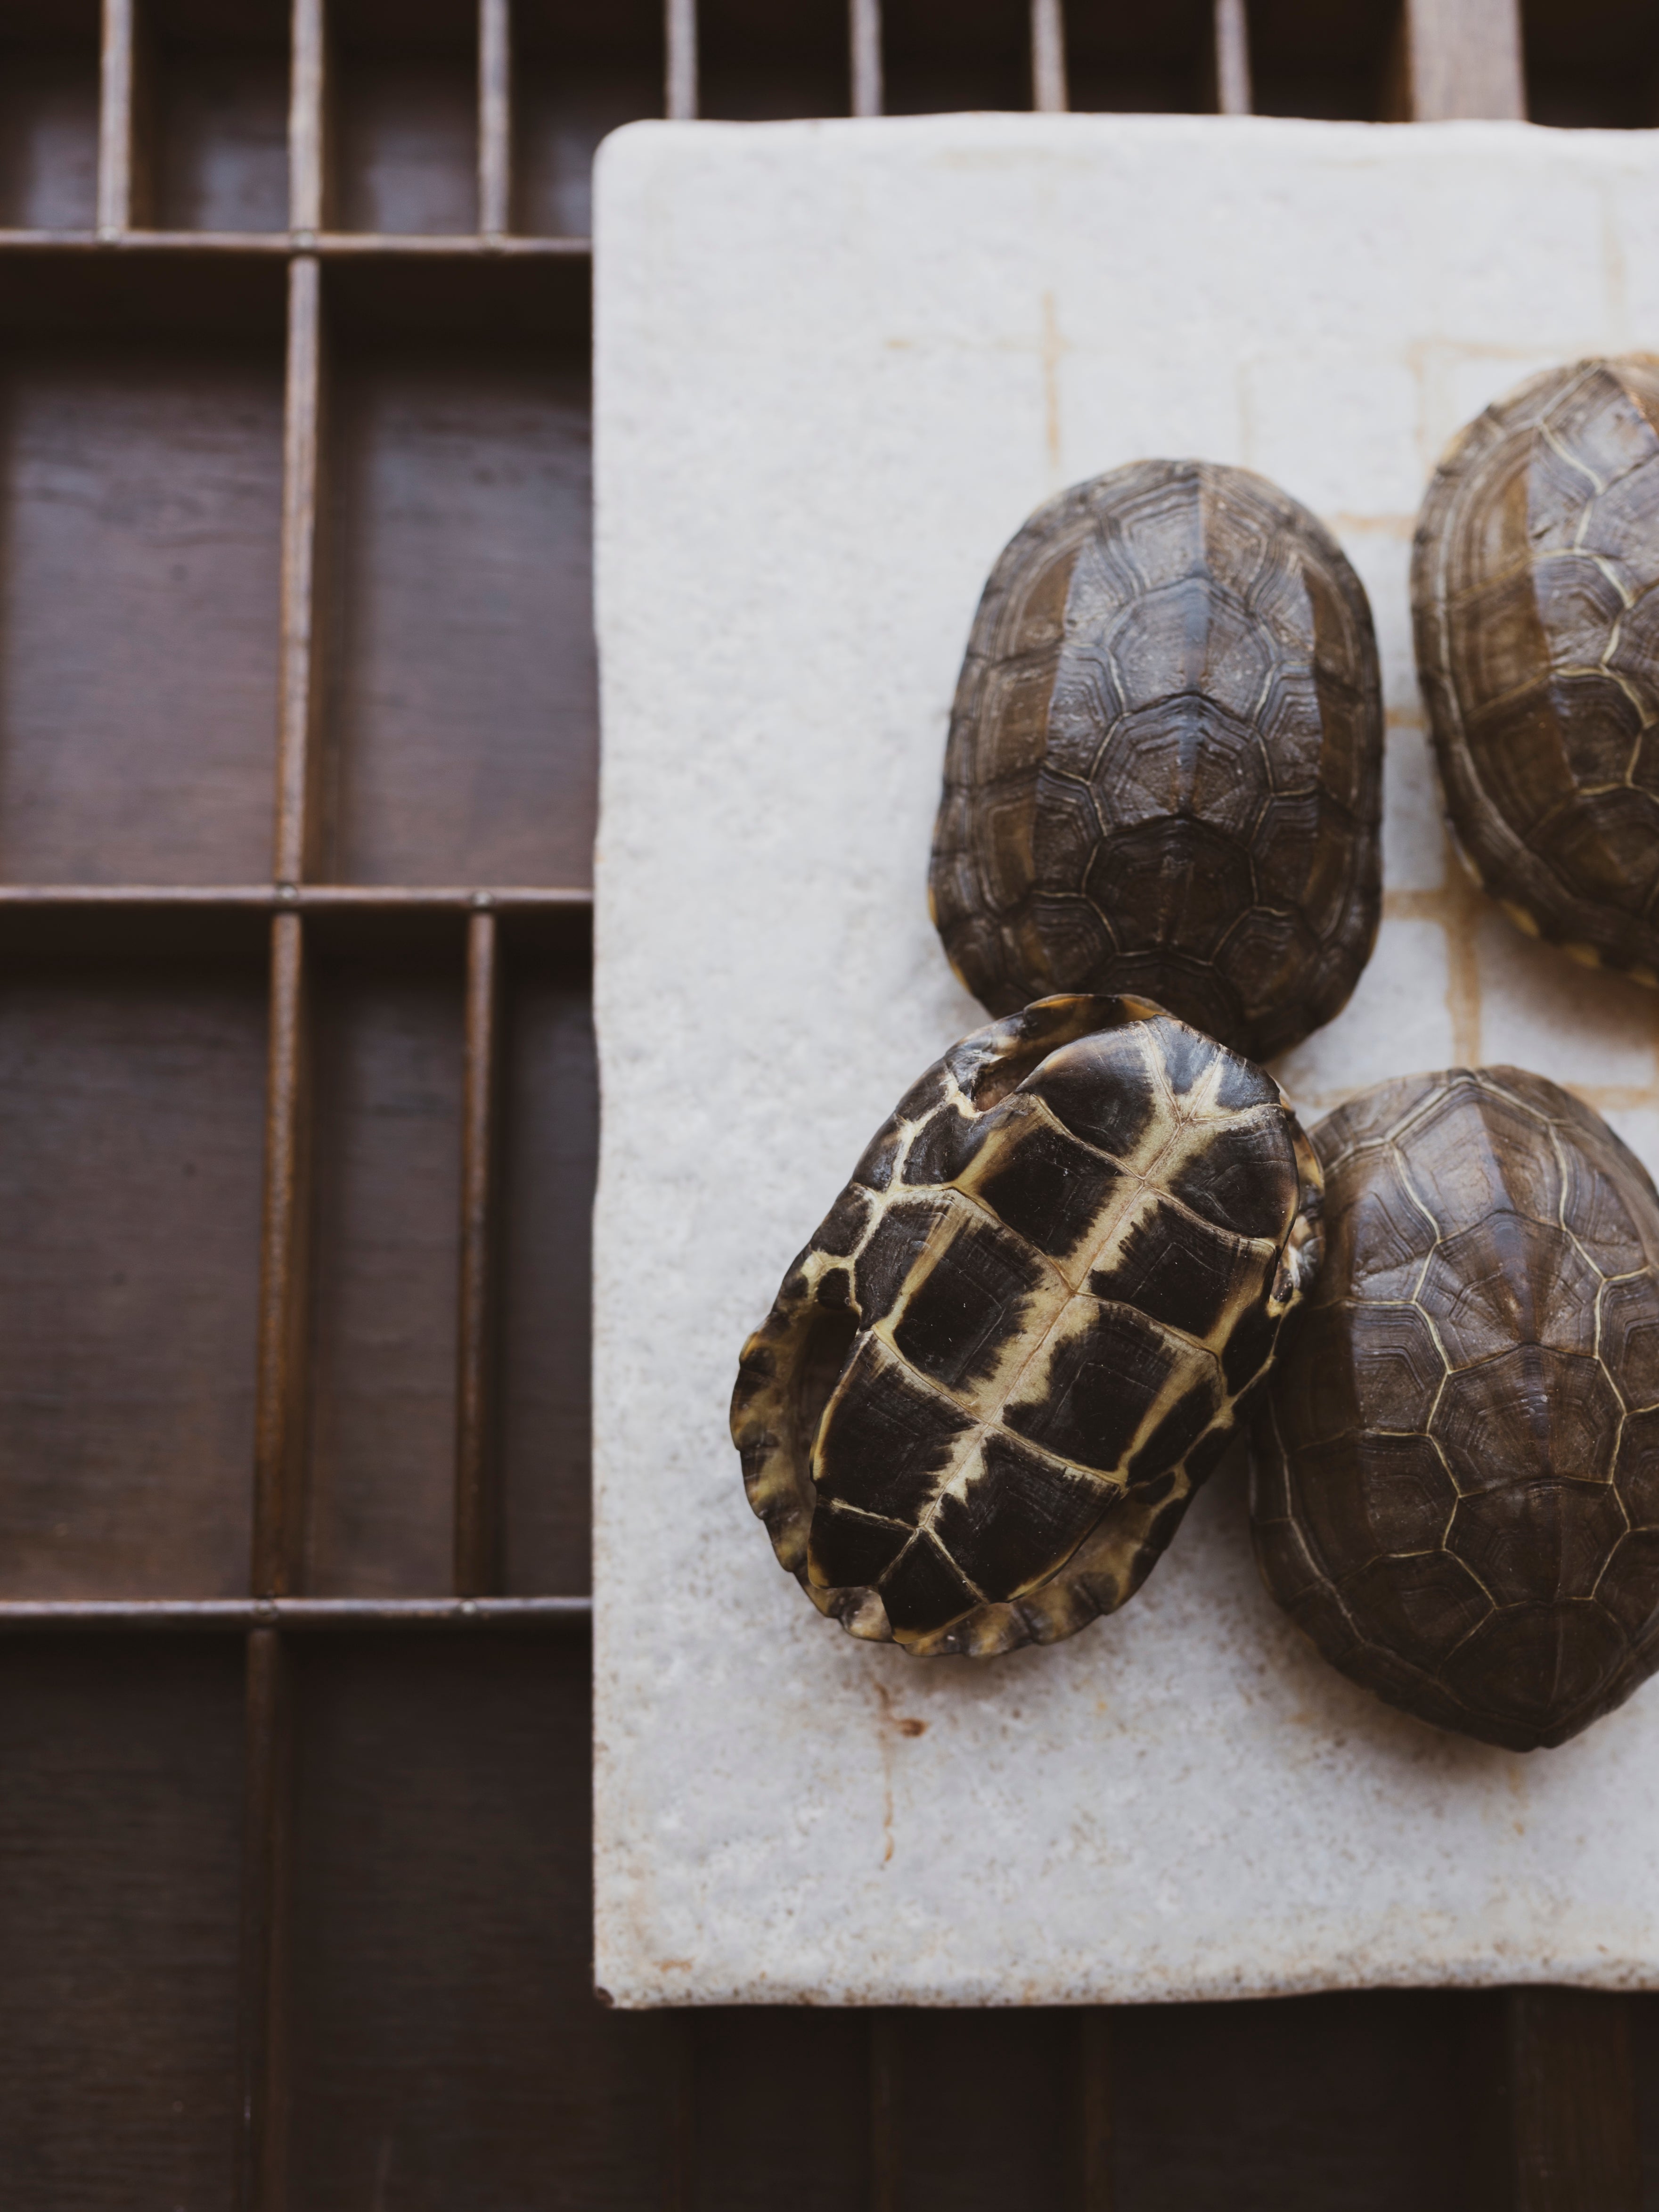 Reeve’s Three Keeled Pond Turtle Shell, SB537